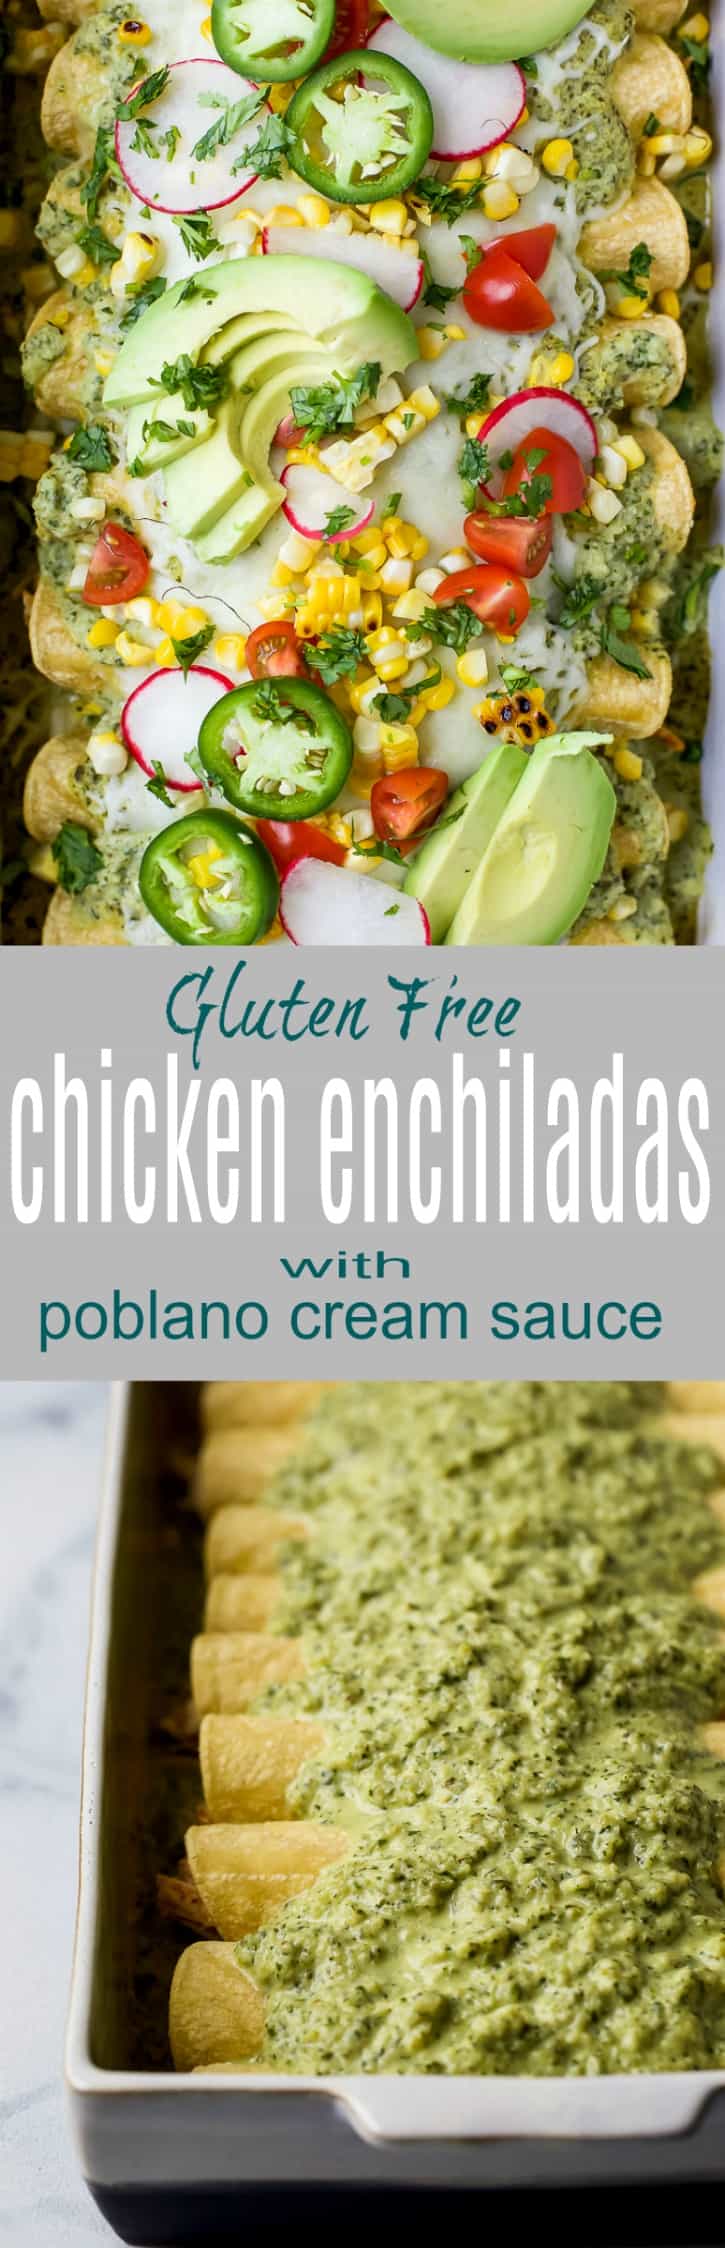 Pinterest collage for Gluten Free Chicken Enchiladas with Poblano Cream Sauce recipe